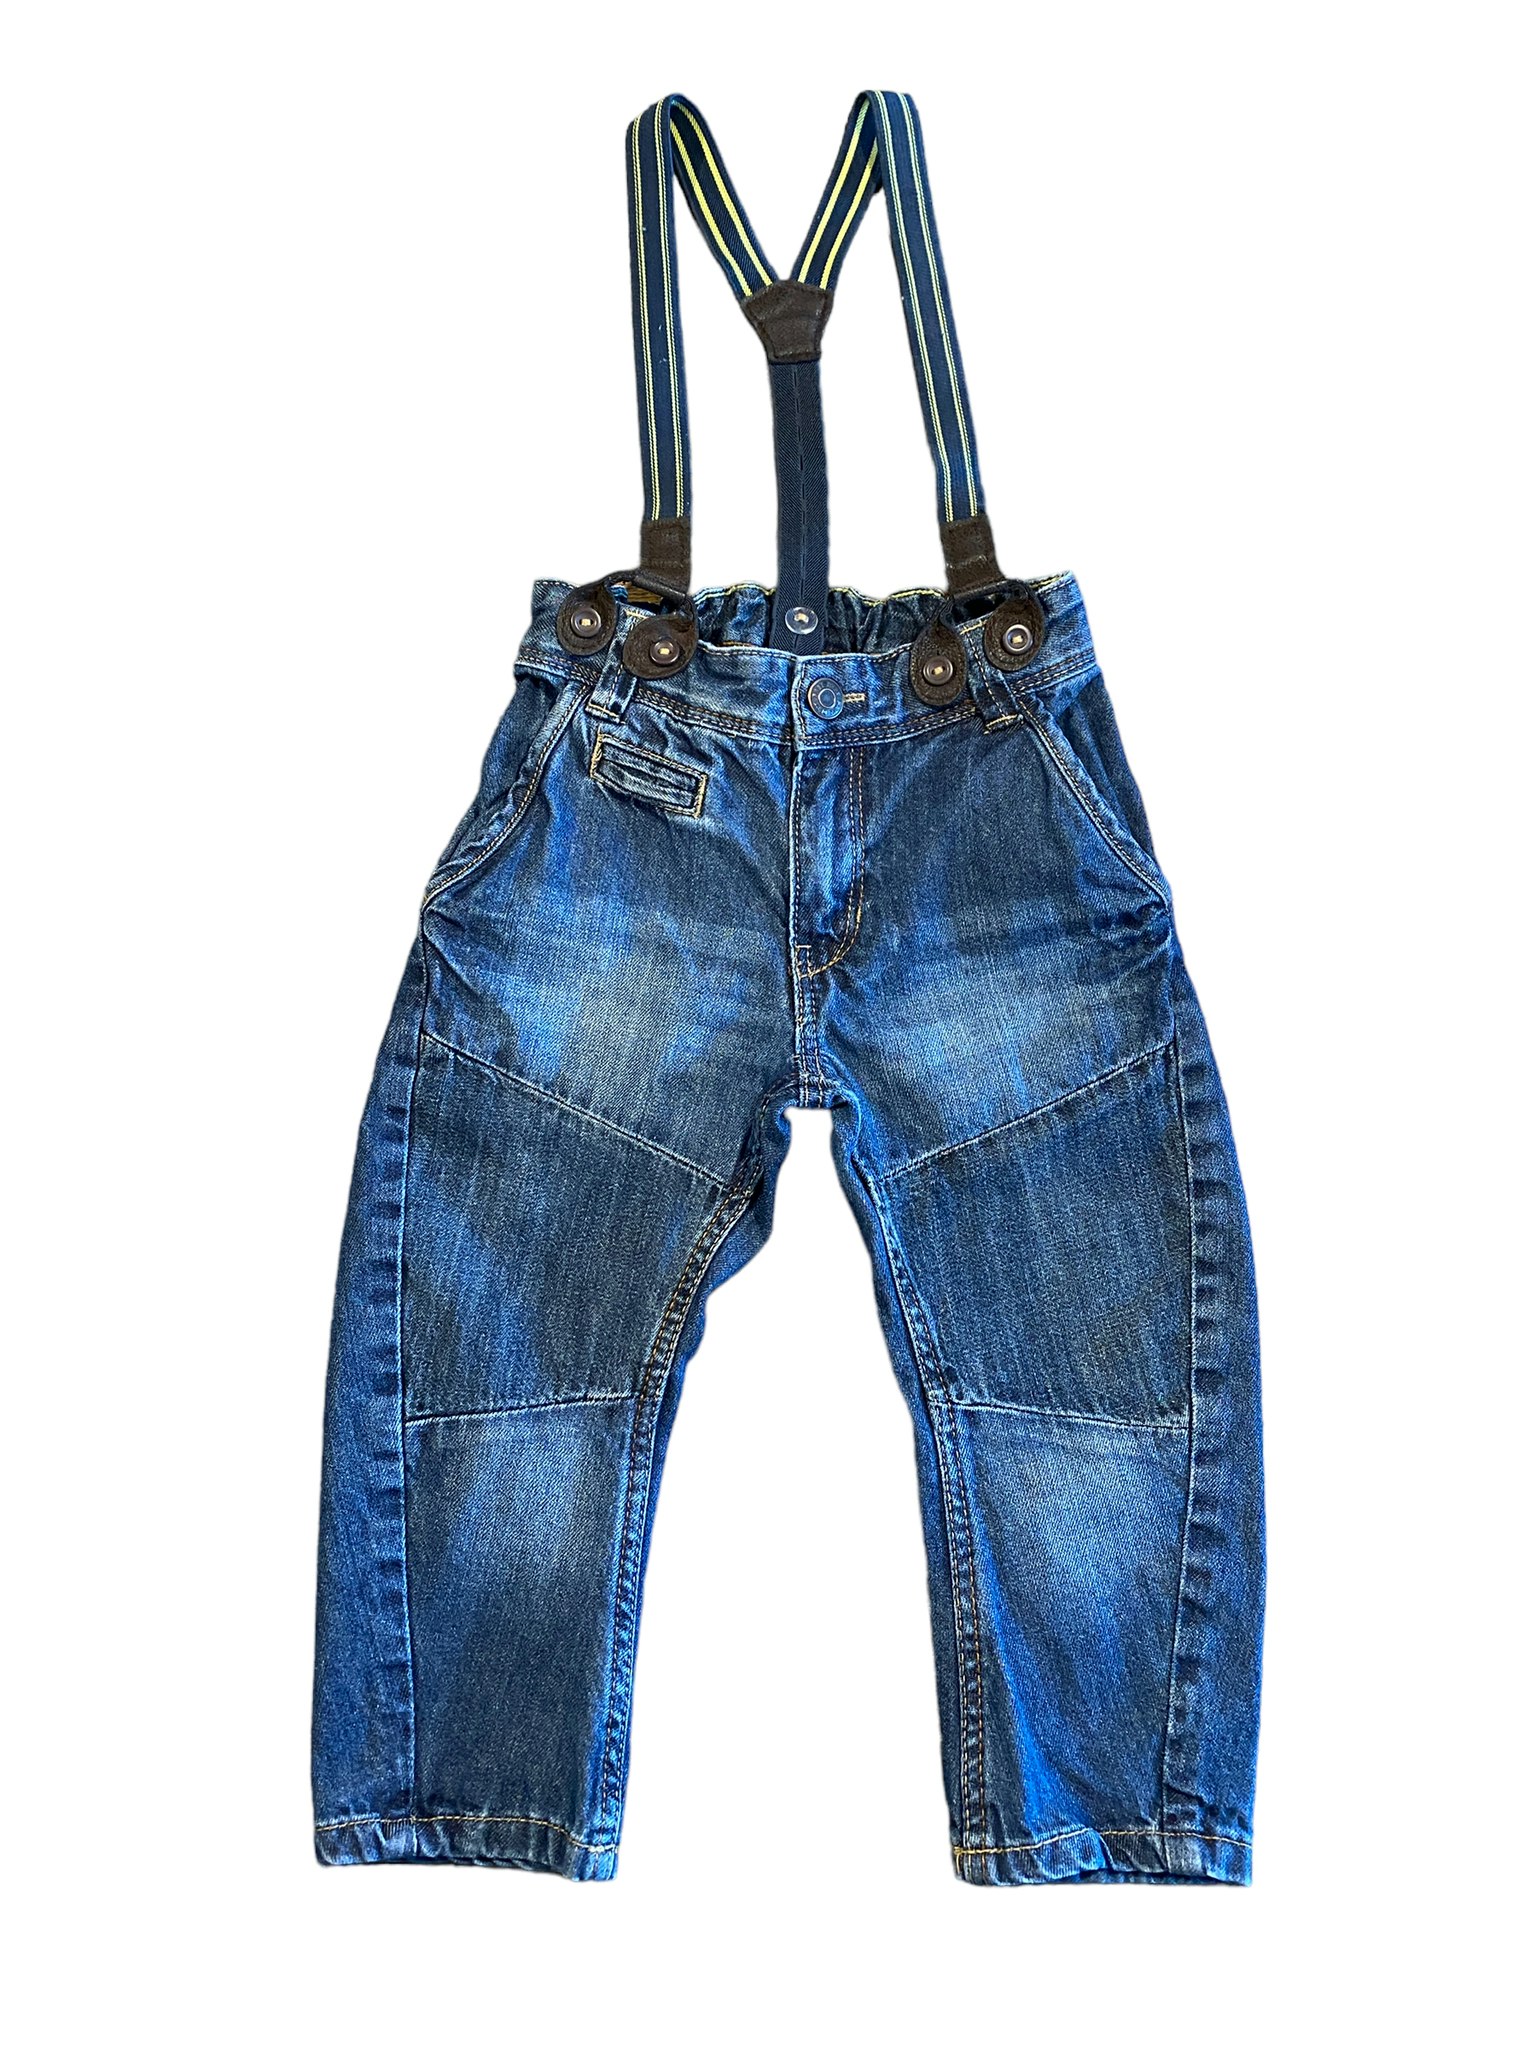 Jeans med hängslen, HM, stl 80